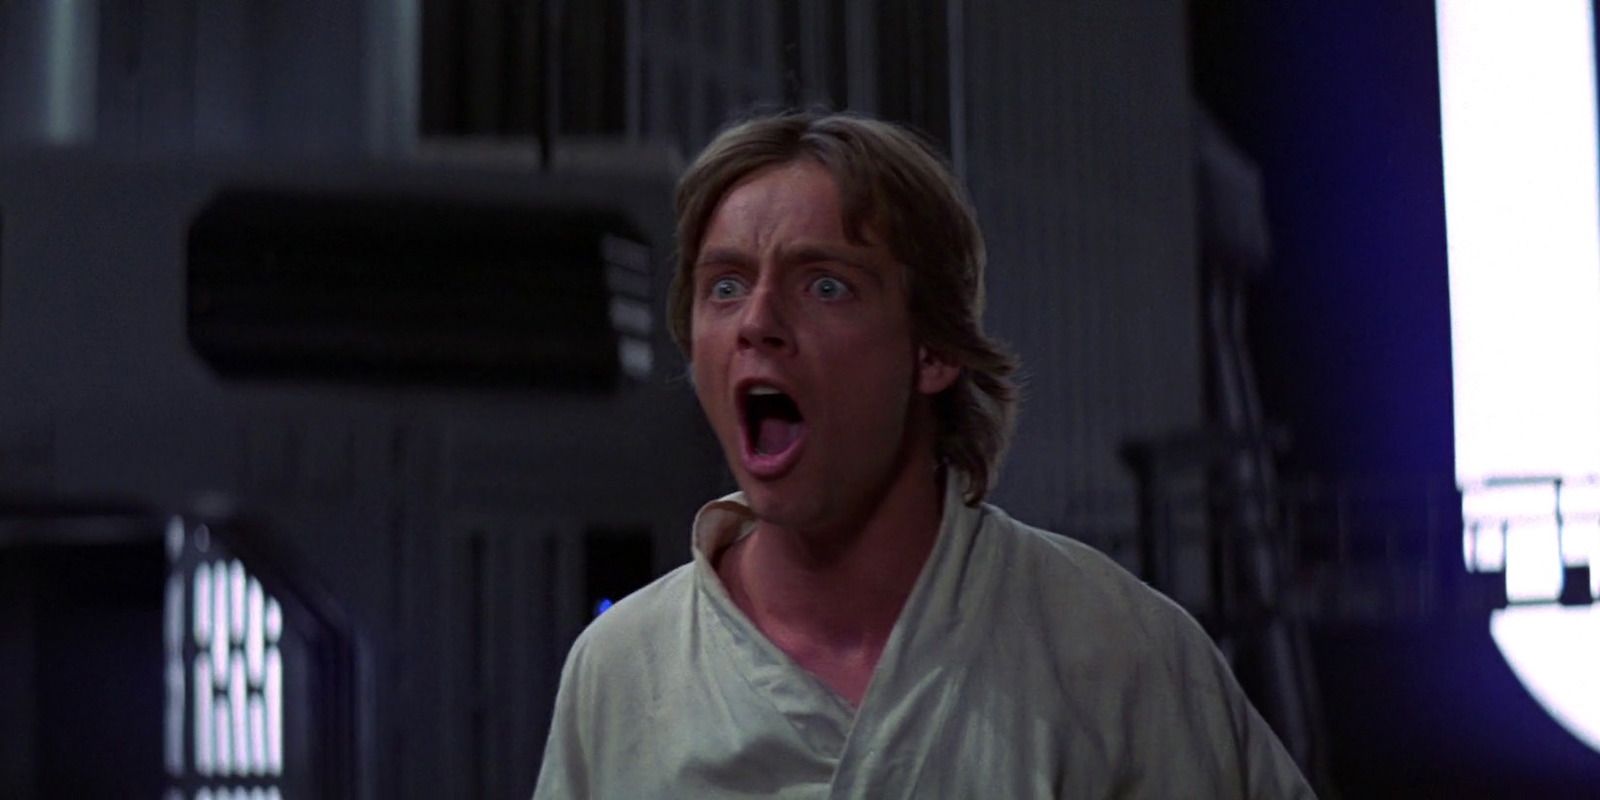 Luke Skywalker witnesses the death of Obi-Wan Kenobi in A New Hope